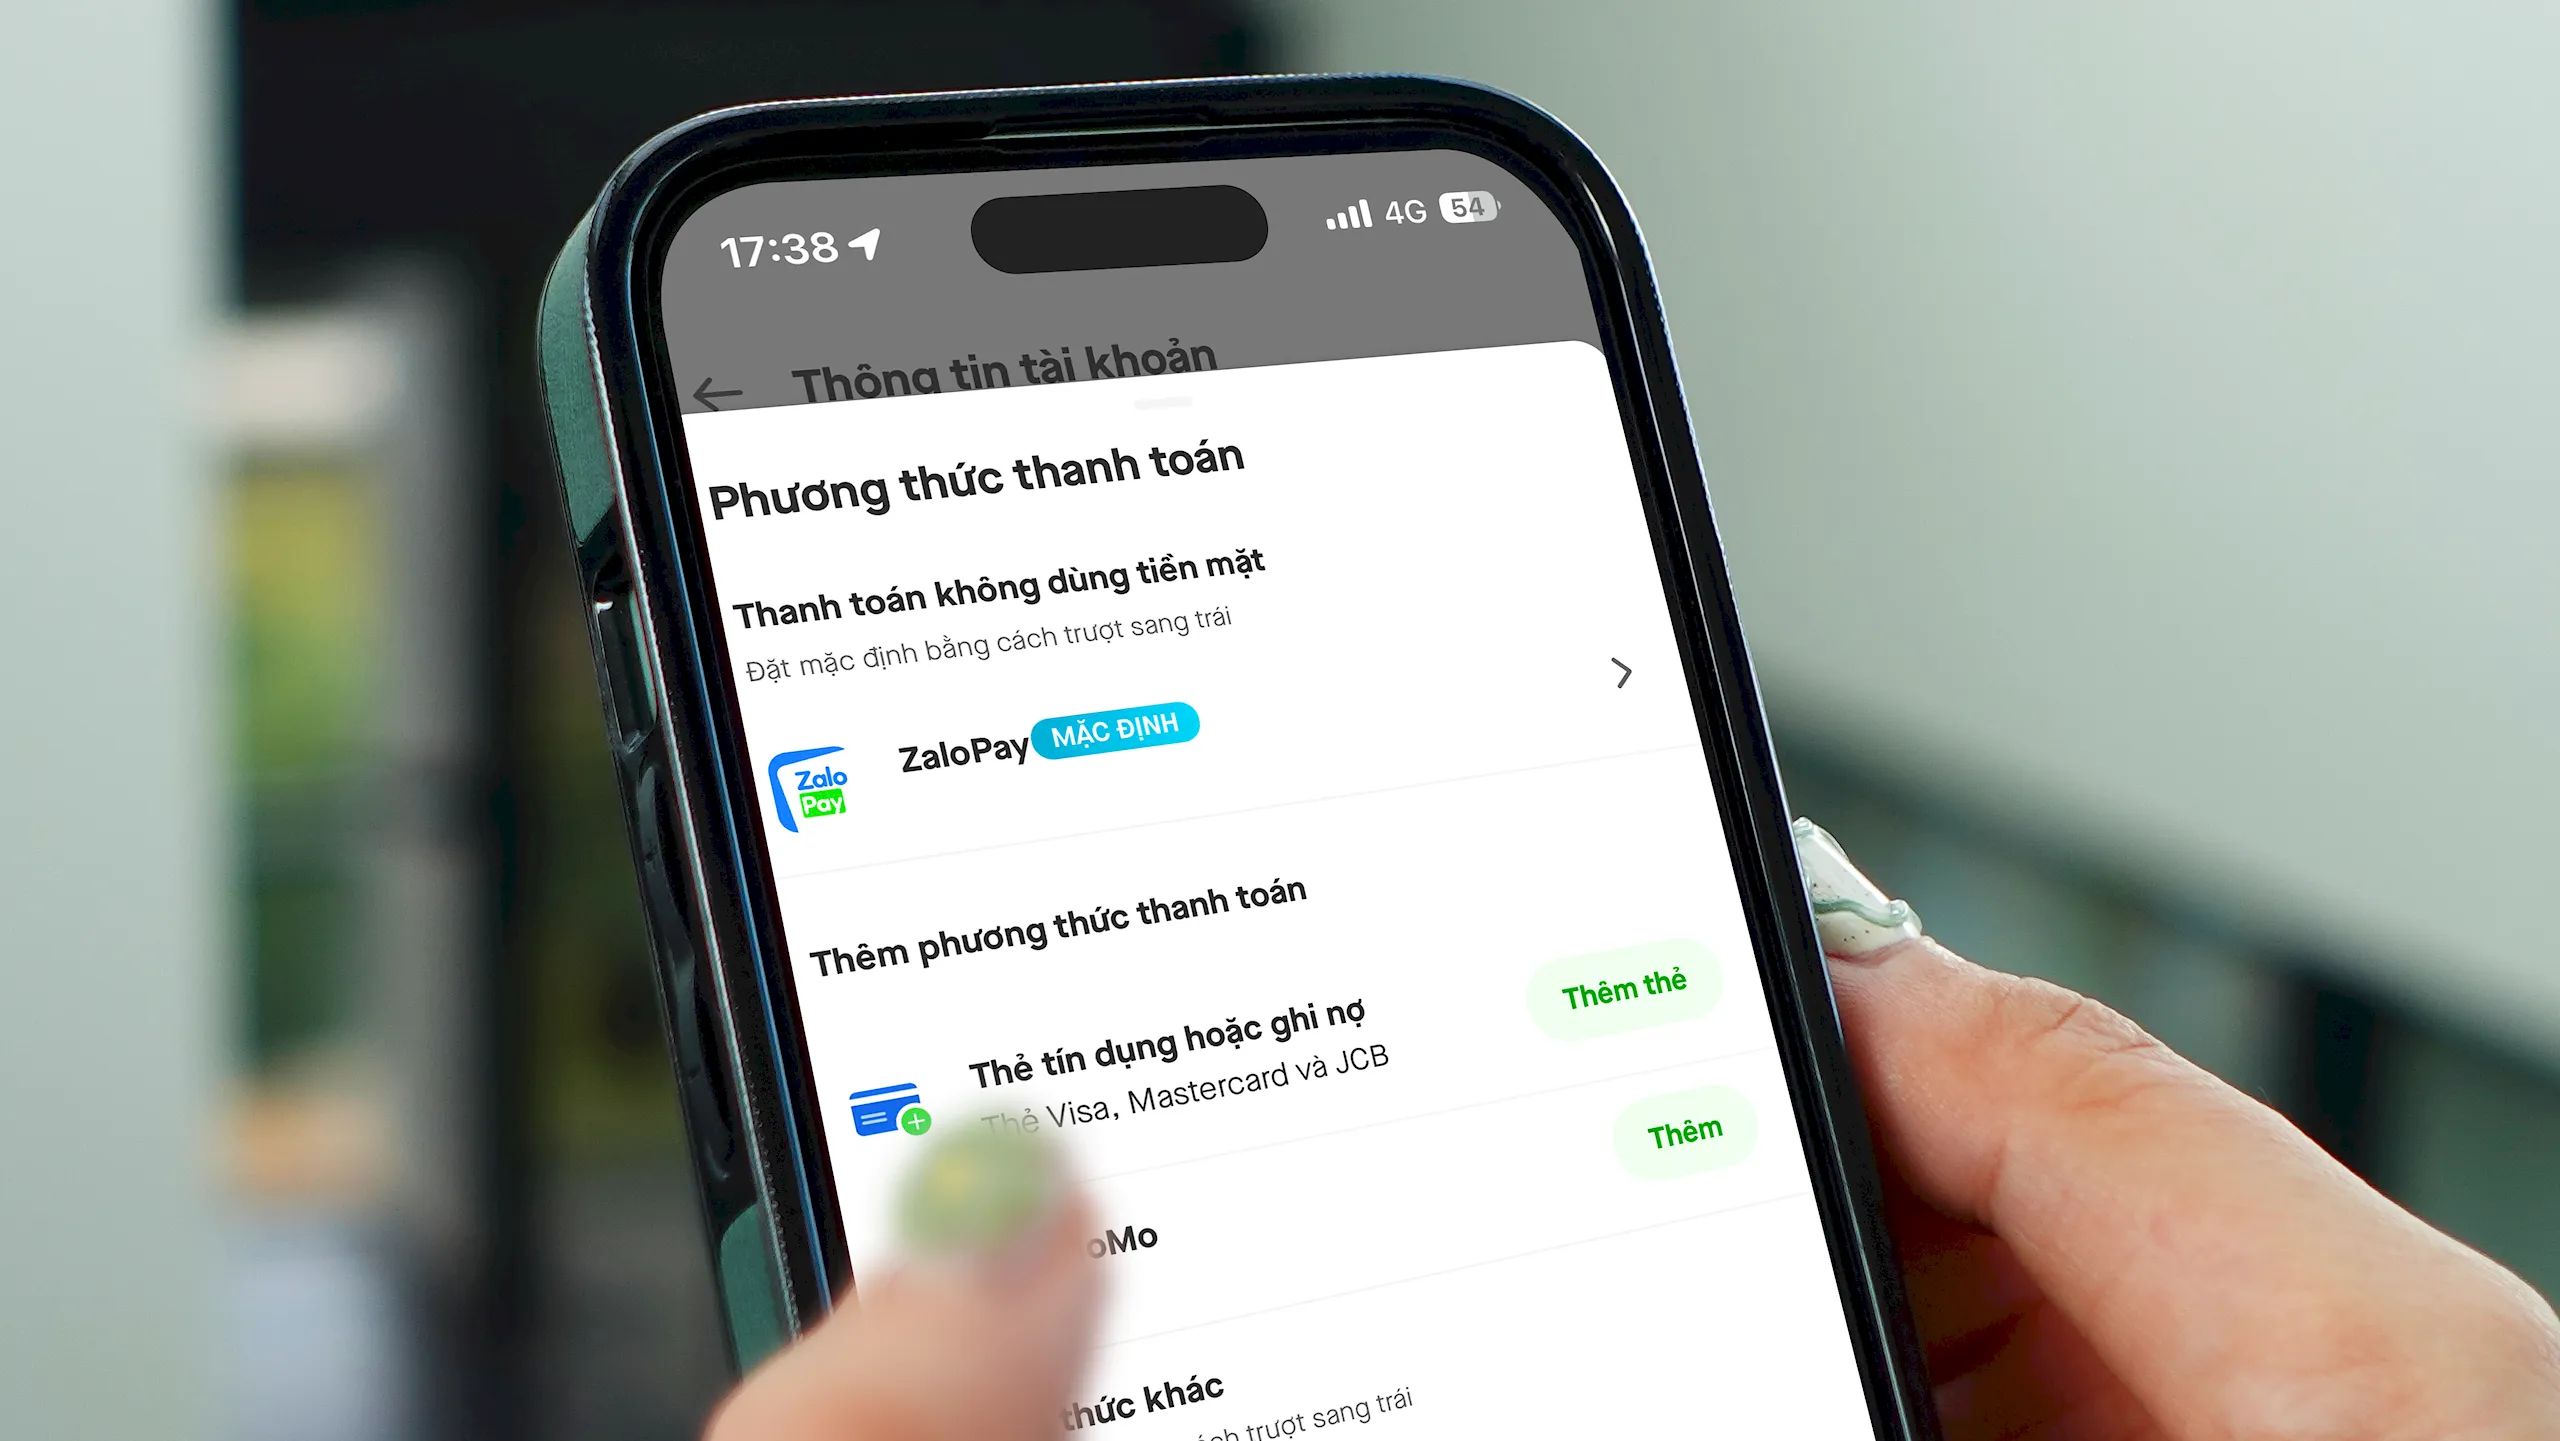 Gojek và ZaloPay công bố hợp tác, cung cấp thêm lựa chọn thanh toán không dùng tiền mặt cho người dùng Gojek tại Việt Nam